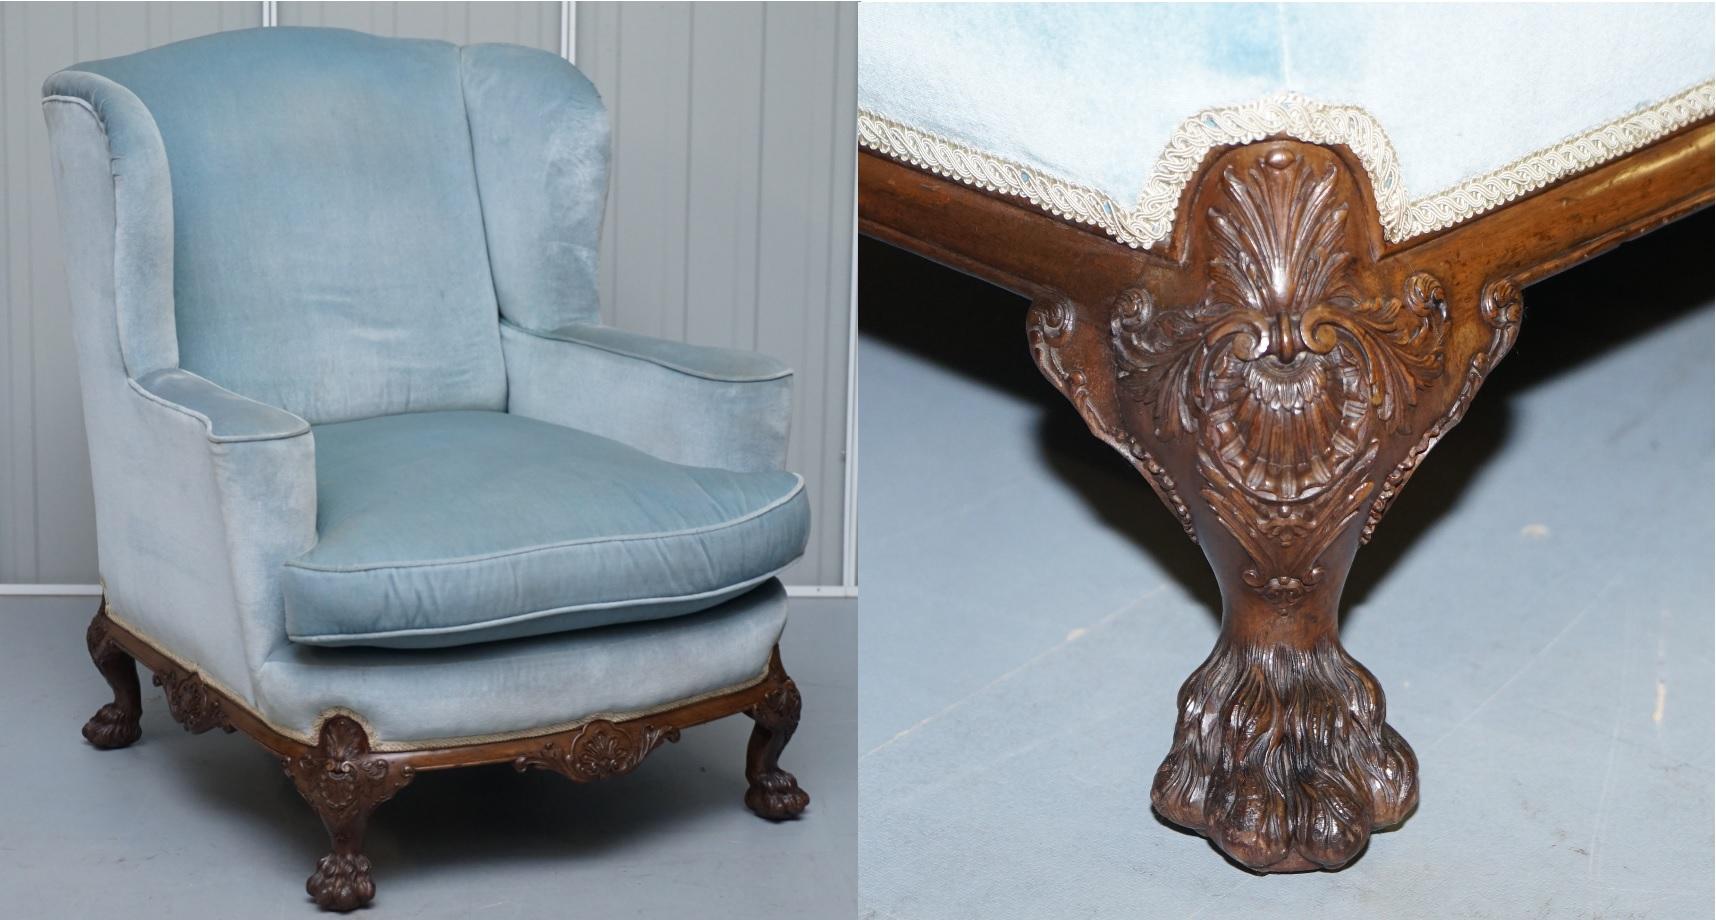 Wir freuen uns, diesen schönen, in England handgefertigten antiken viktorianischen Sessel mit stark geschnitzten Löwentatzenfüßen im Stil von George II. zum Verkauf anbieten zu können.

Dieser Stuhl ist wirklich ein Statement Stück, das solide